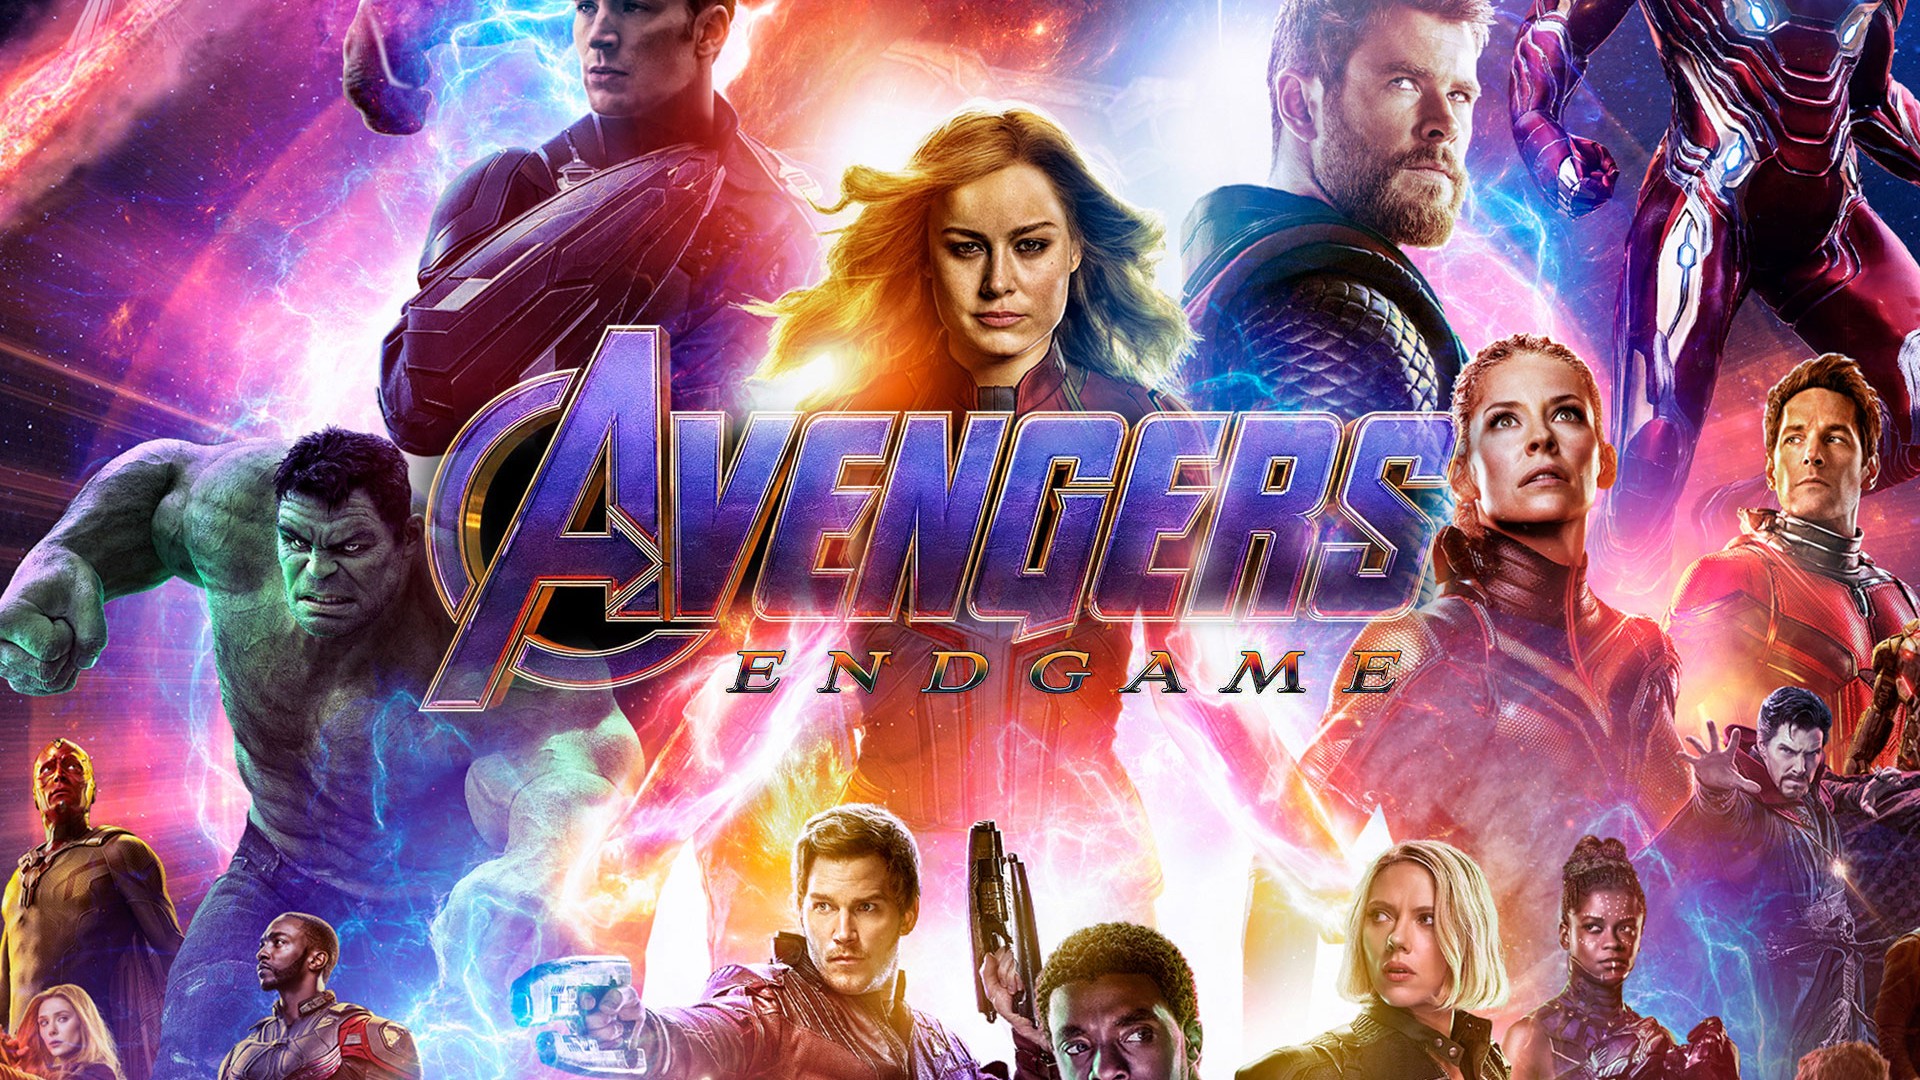 Related Wallpaper for Avengers Endgame 2019 Poster Wallpaper. 